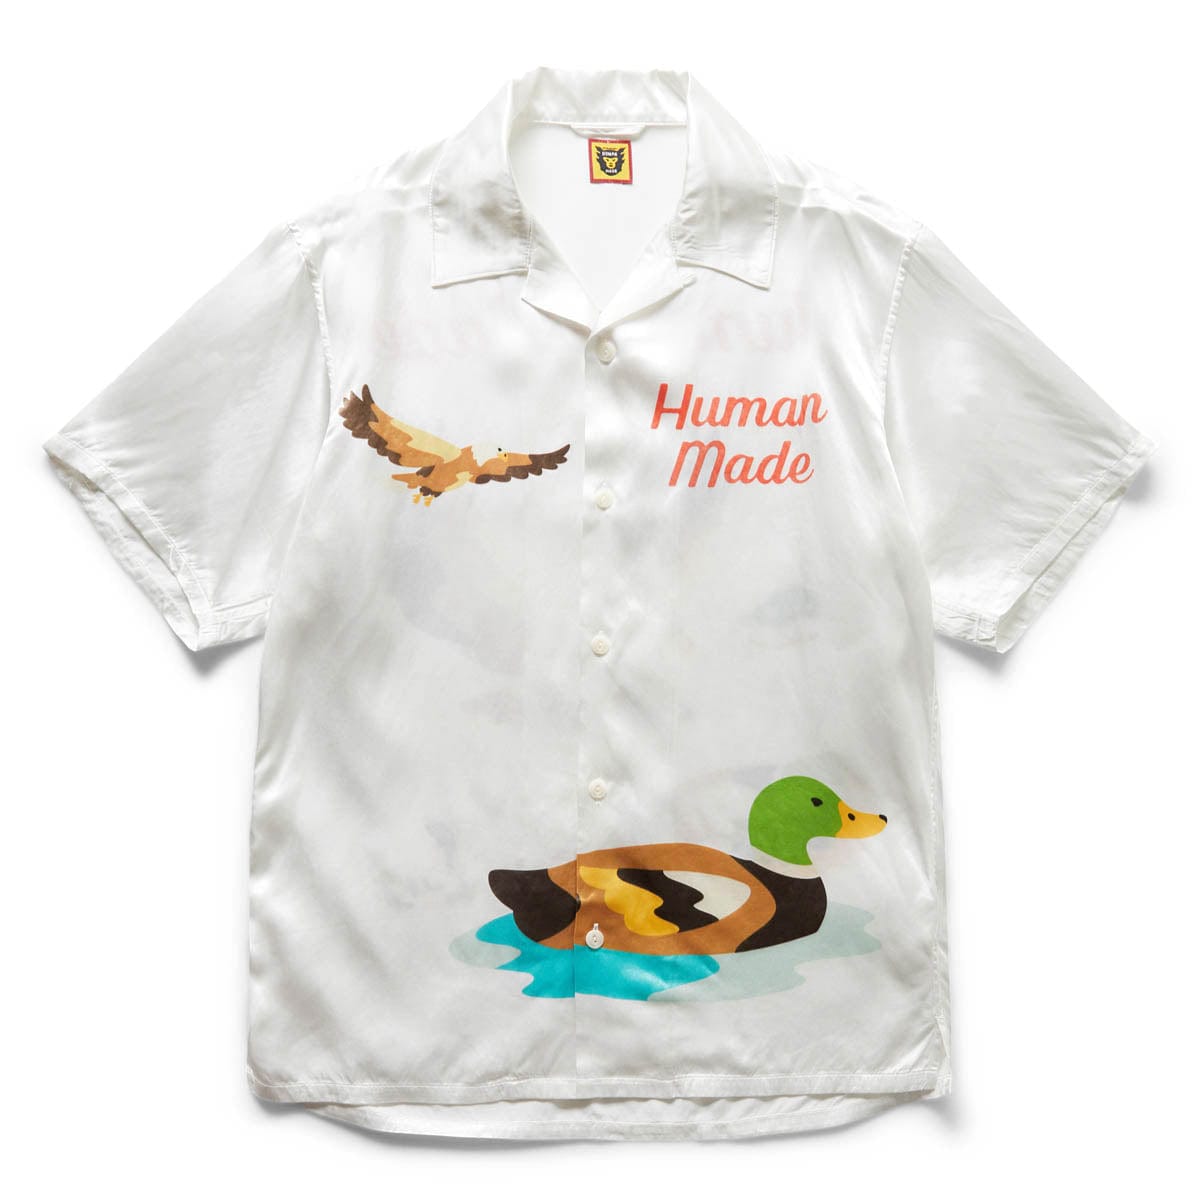 Human Made Shirts ALOHA SHIRT